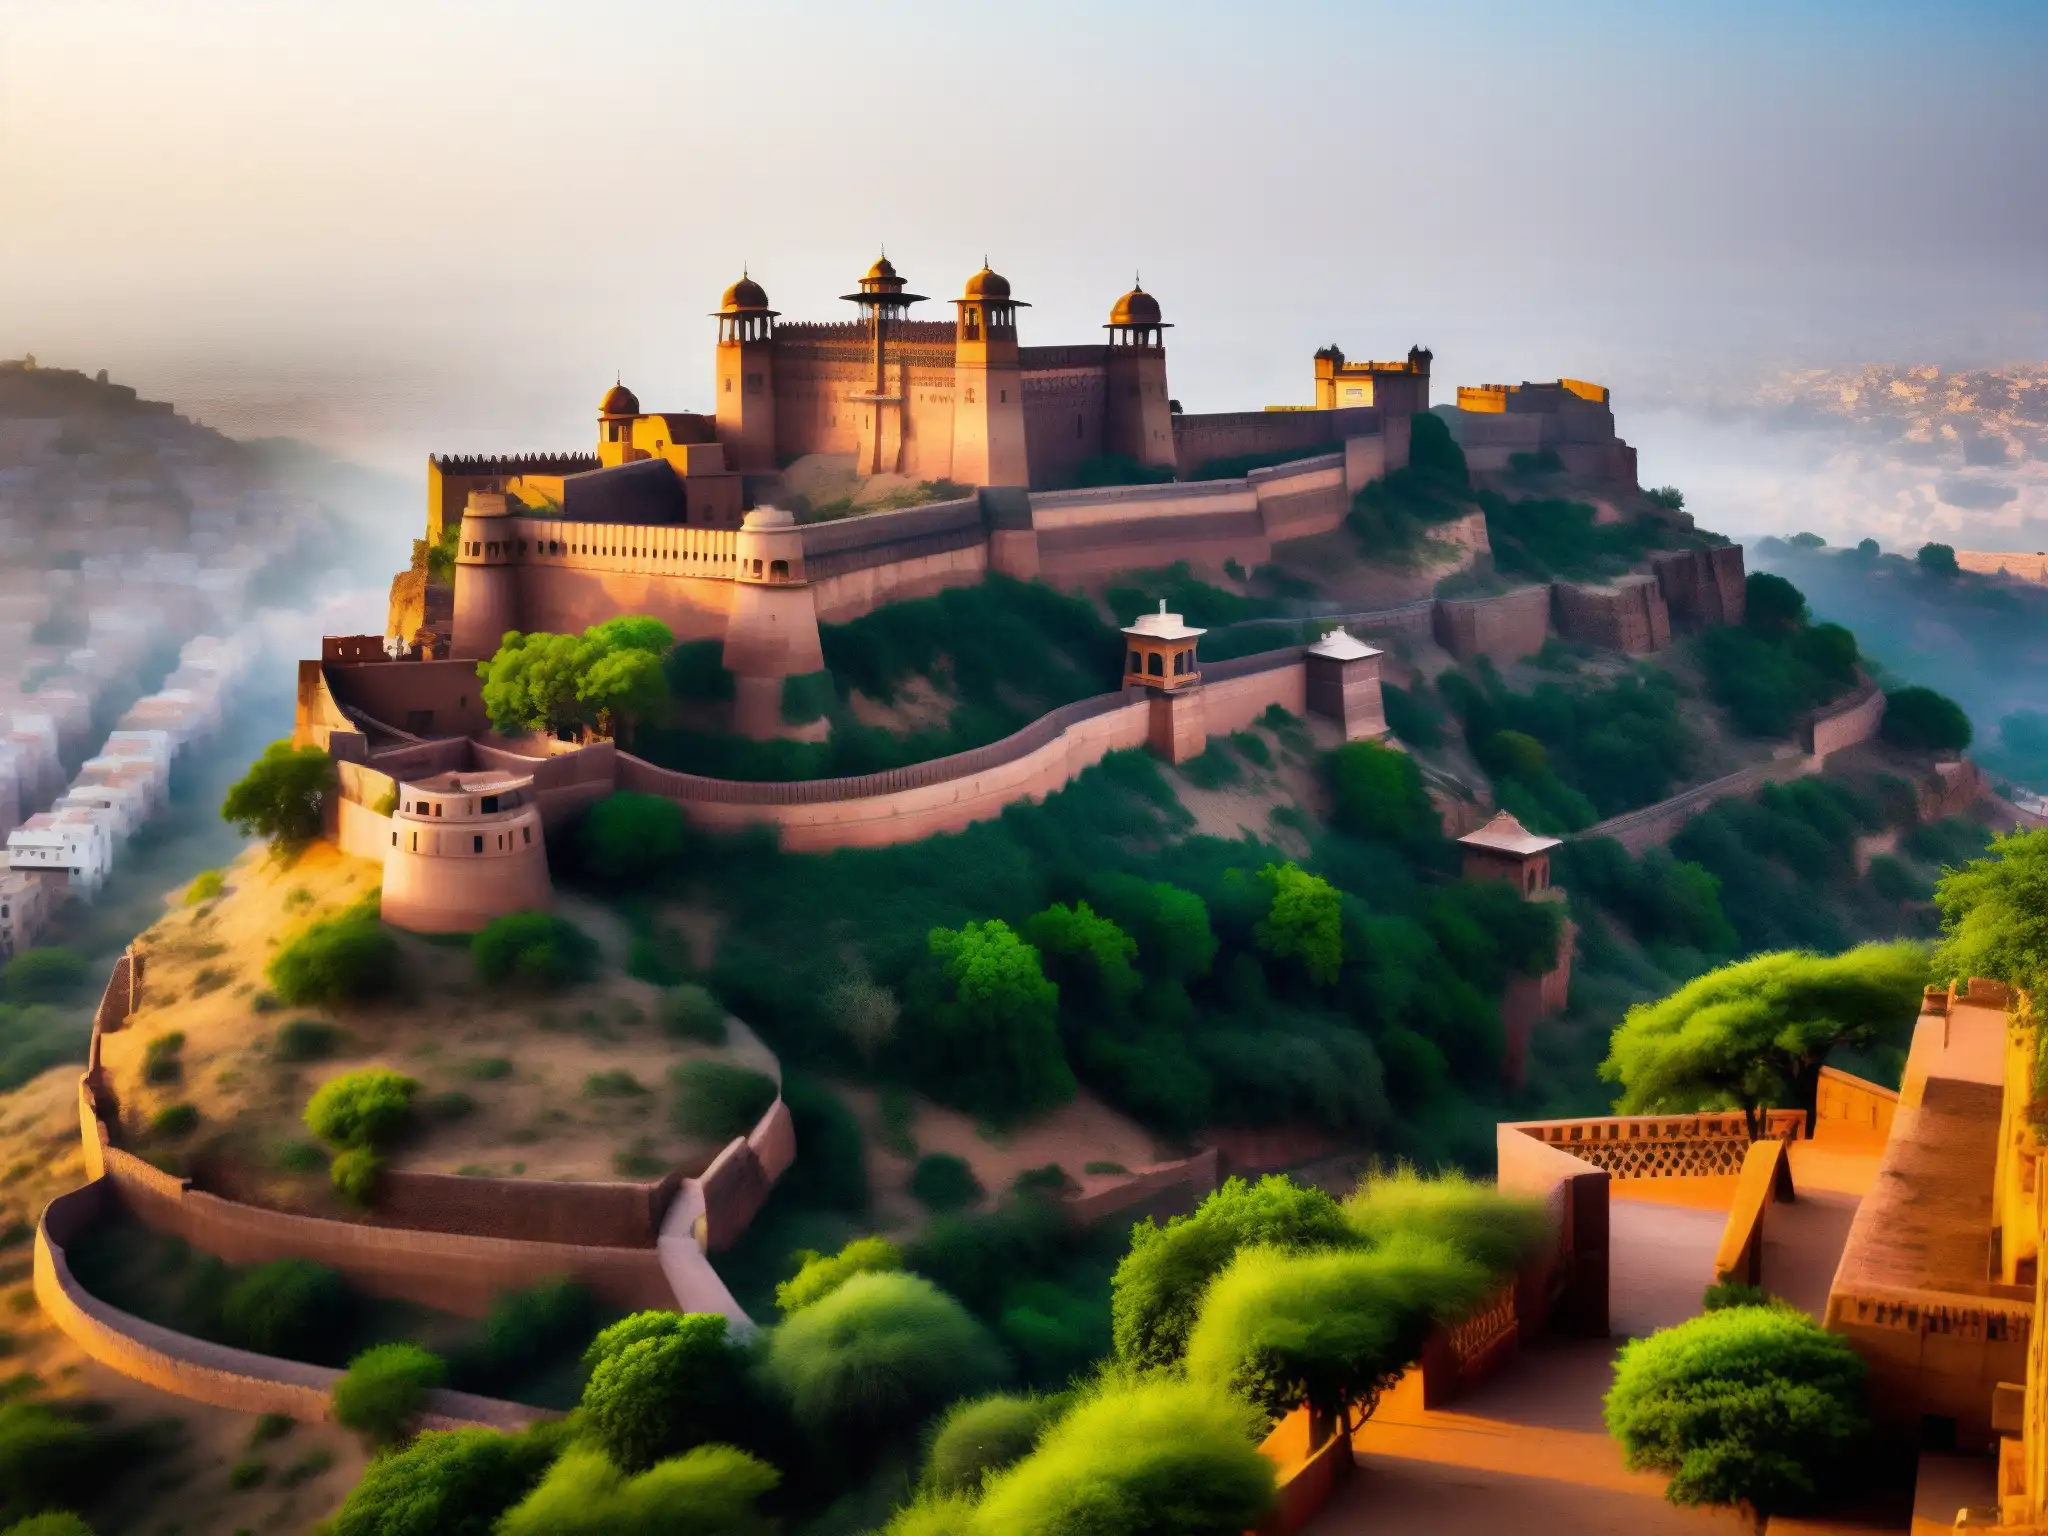 Majestuosa fortaleza de Mehrangarh, Rajasthan, envuelta en niebla matutina, evocando fantasmas reyes y narraciones majestuosas